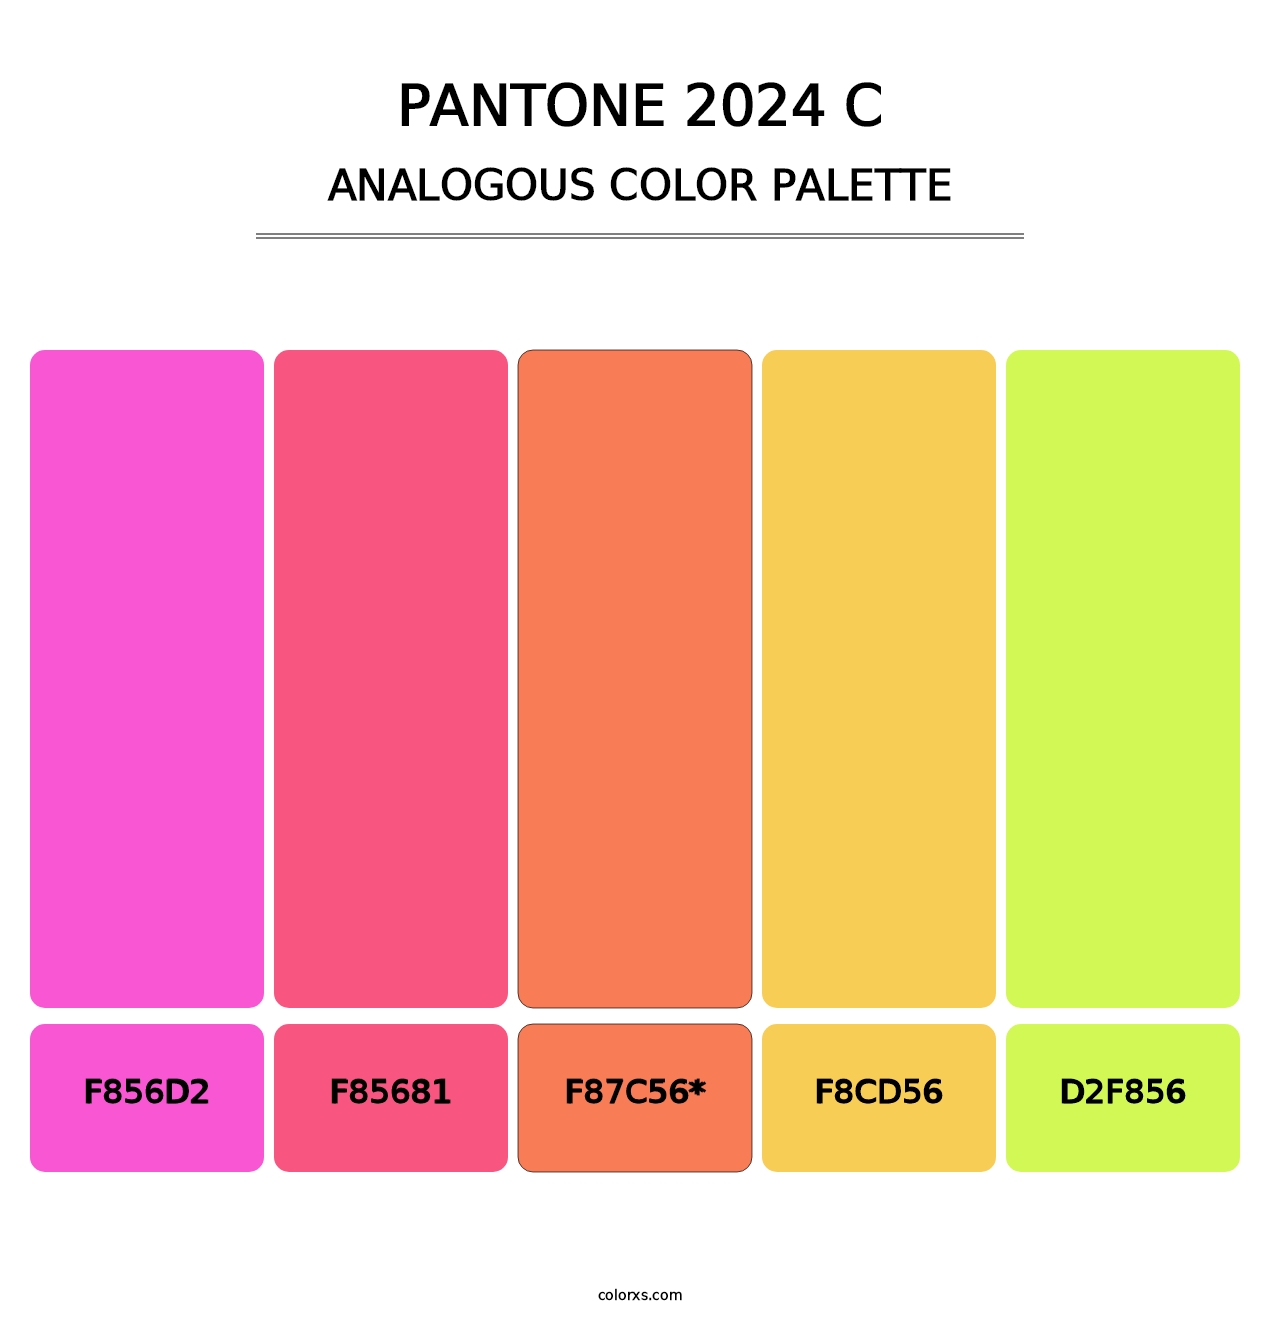 PANTONE 2024 C - Analogous Color Palette